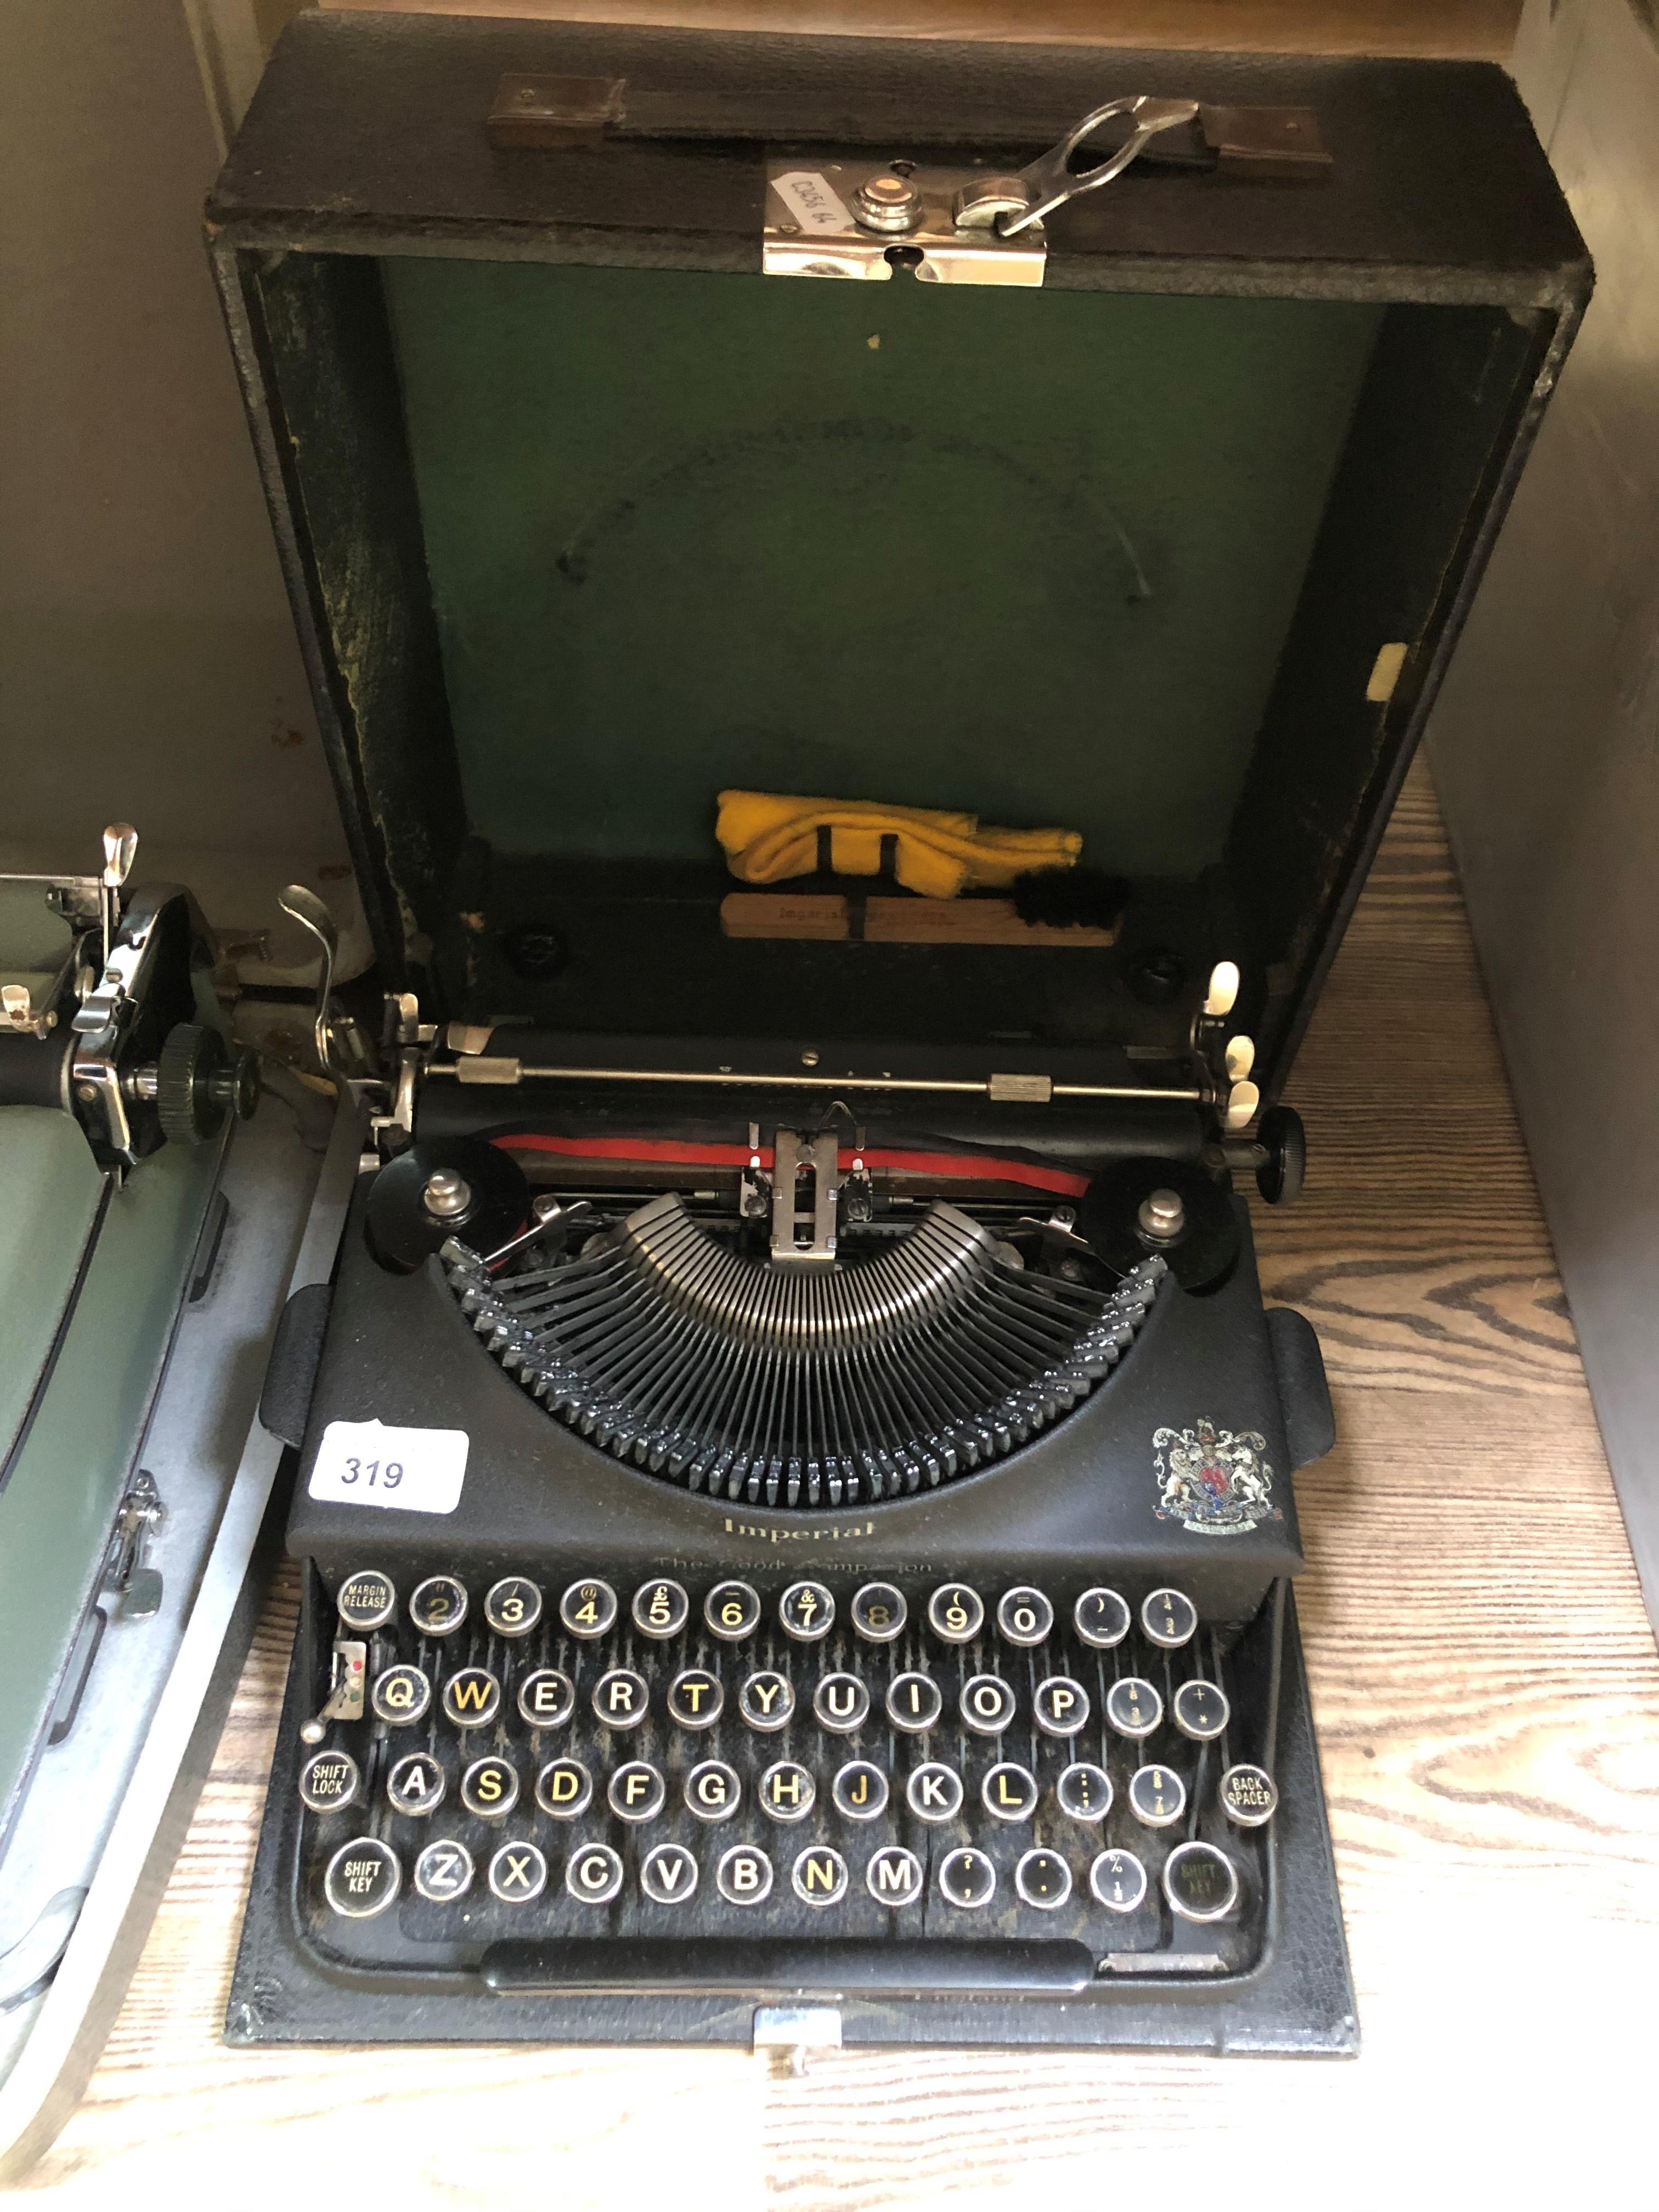 A cased vintage Imperial typewriter